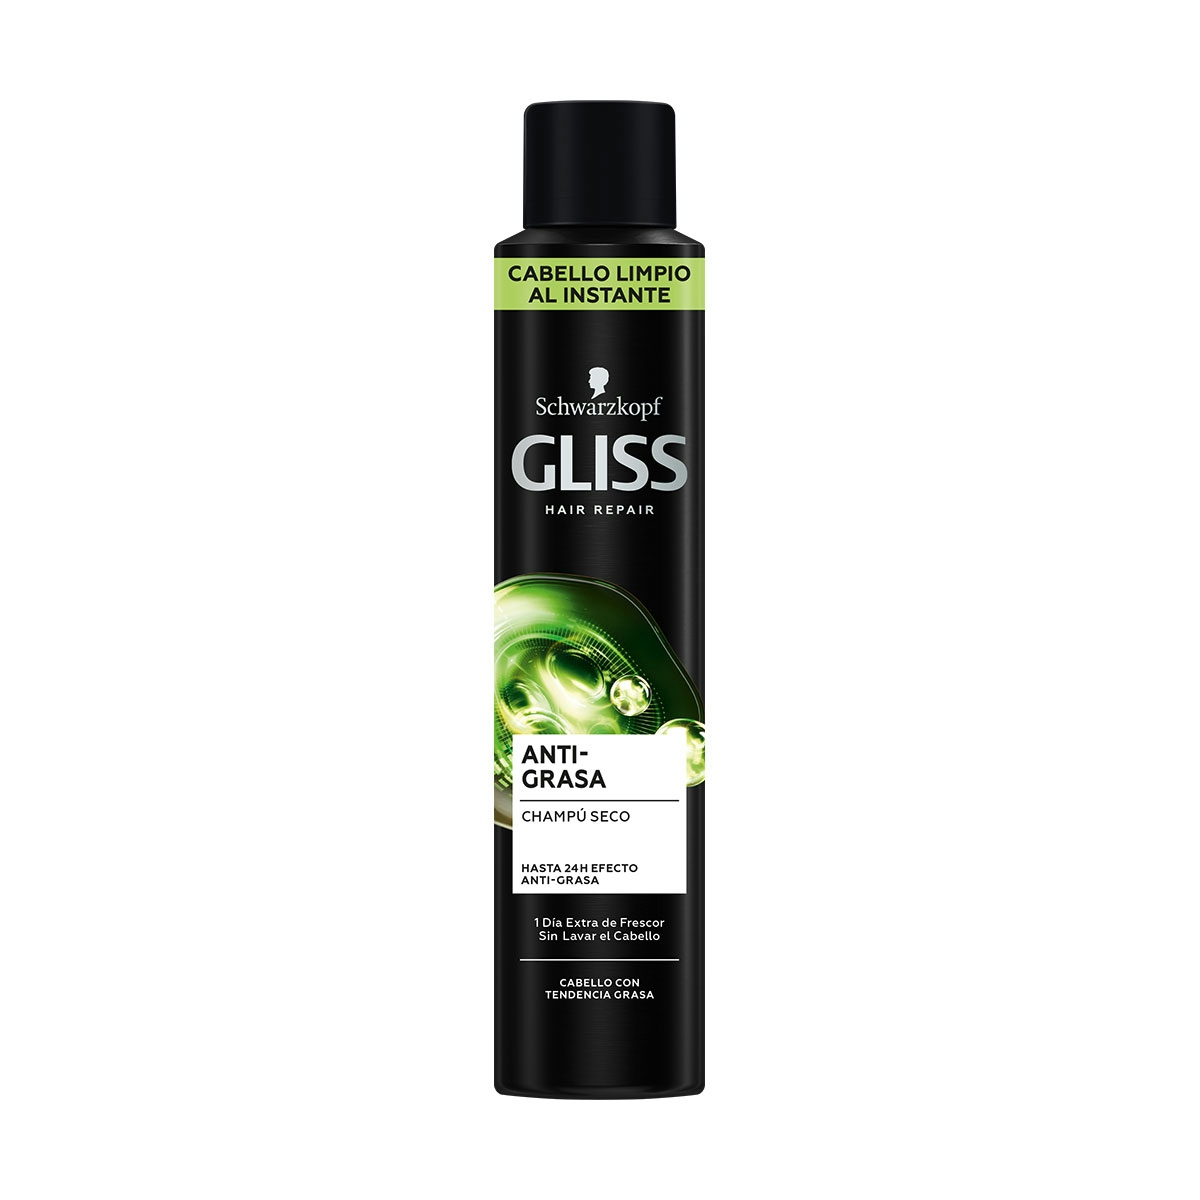 Champú seco GLISS cabellos grasos spray 200 ml